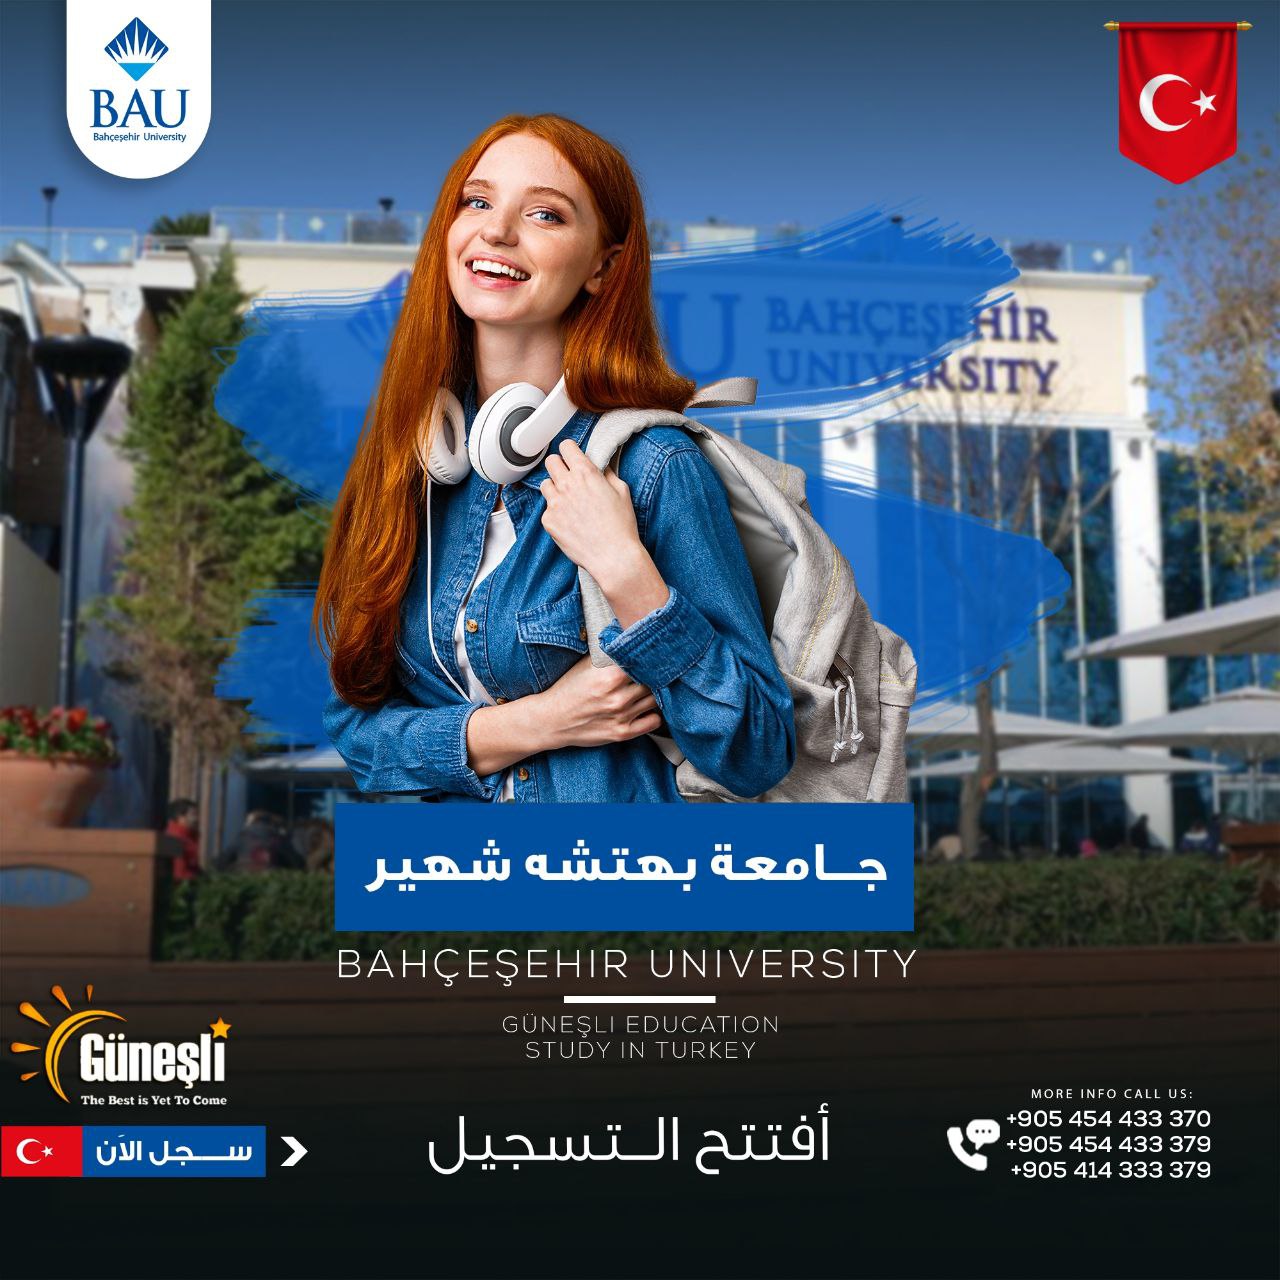 جامعة بهشه شهير